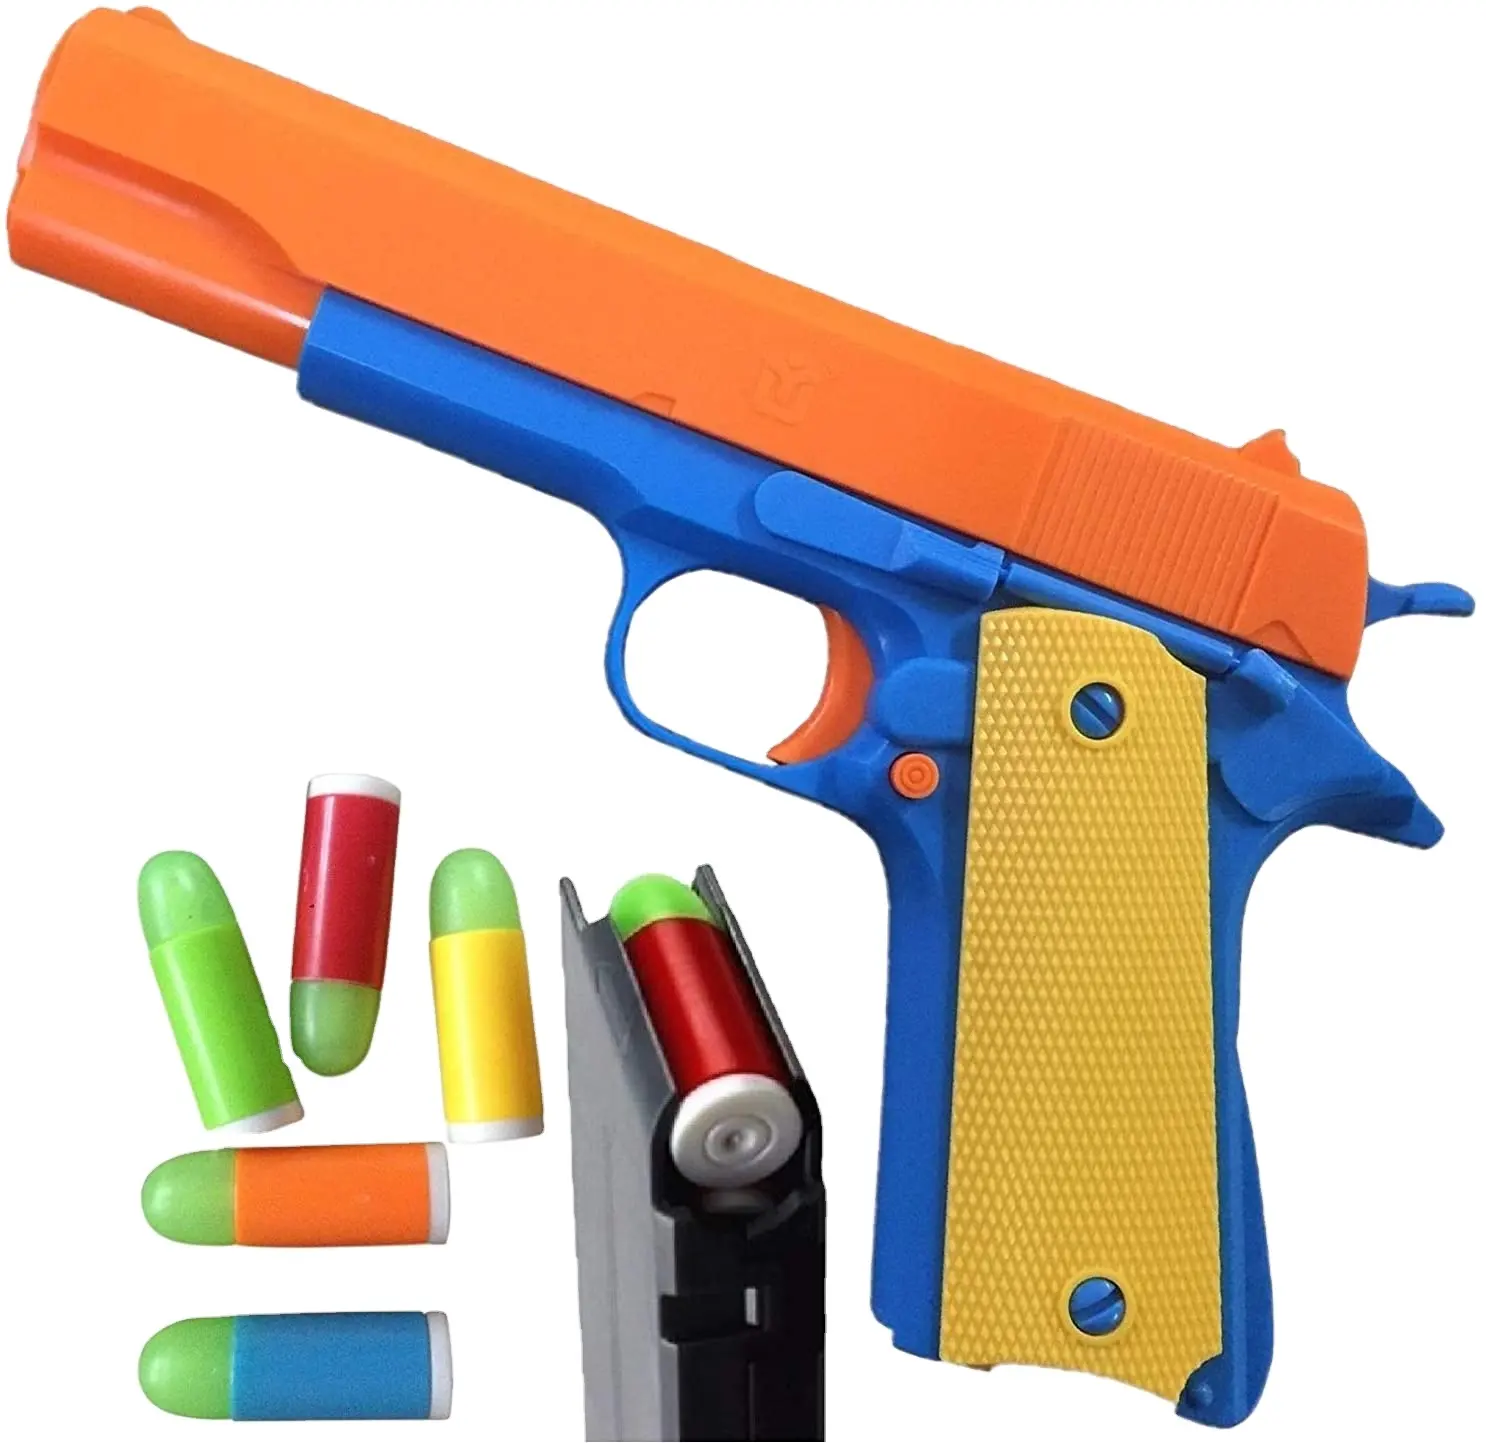 Недорогие реалистичные игрушечные пистолеты в масштабе 1:1 с 10 мягкими пулями и 5 патронами для извлечения магазина